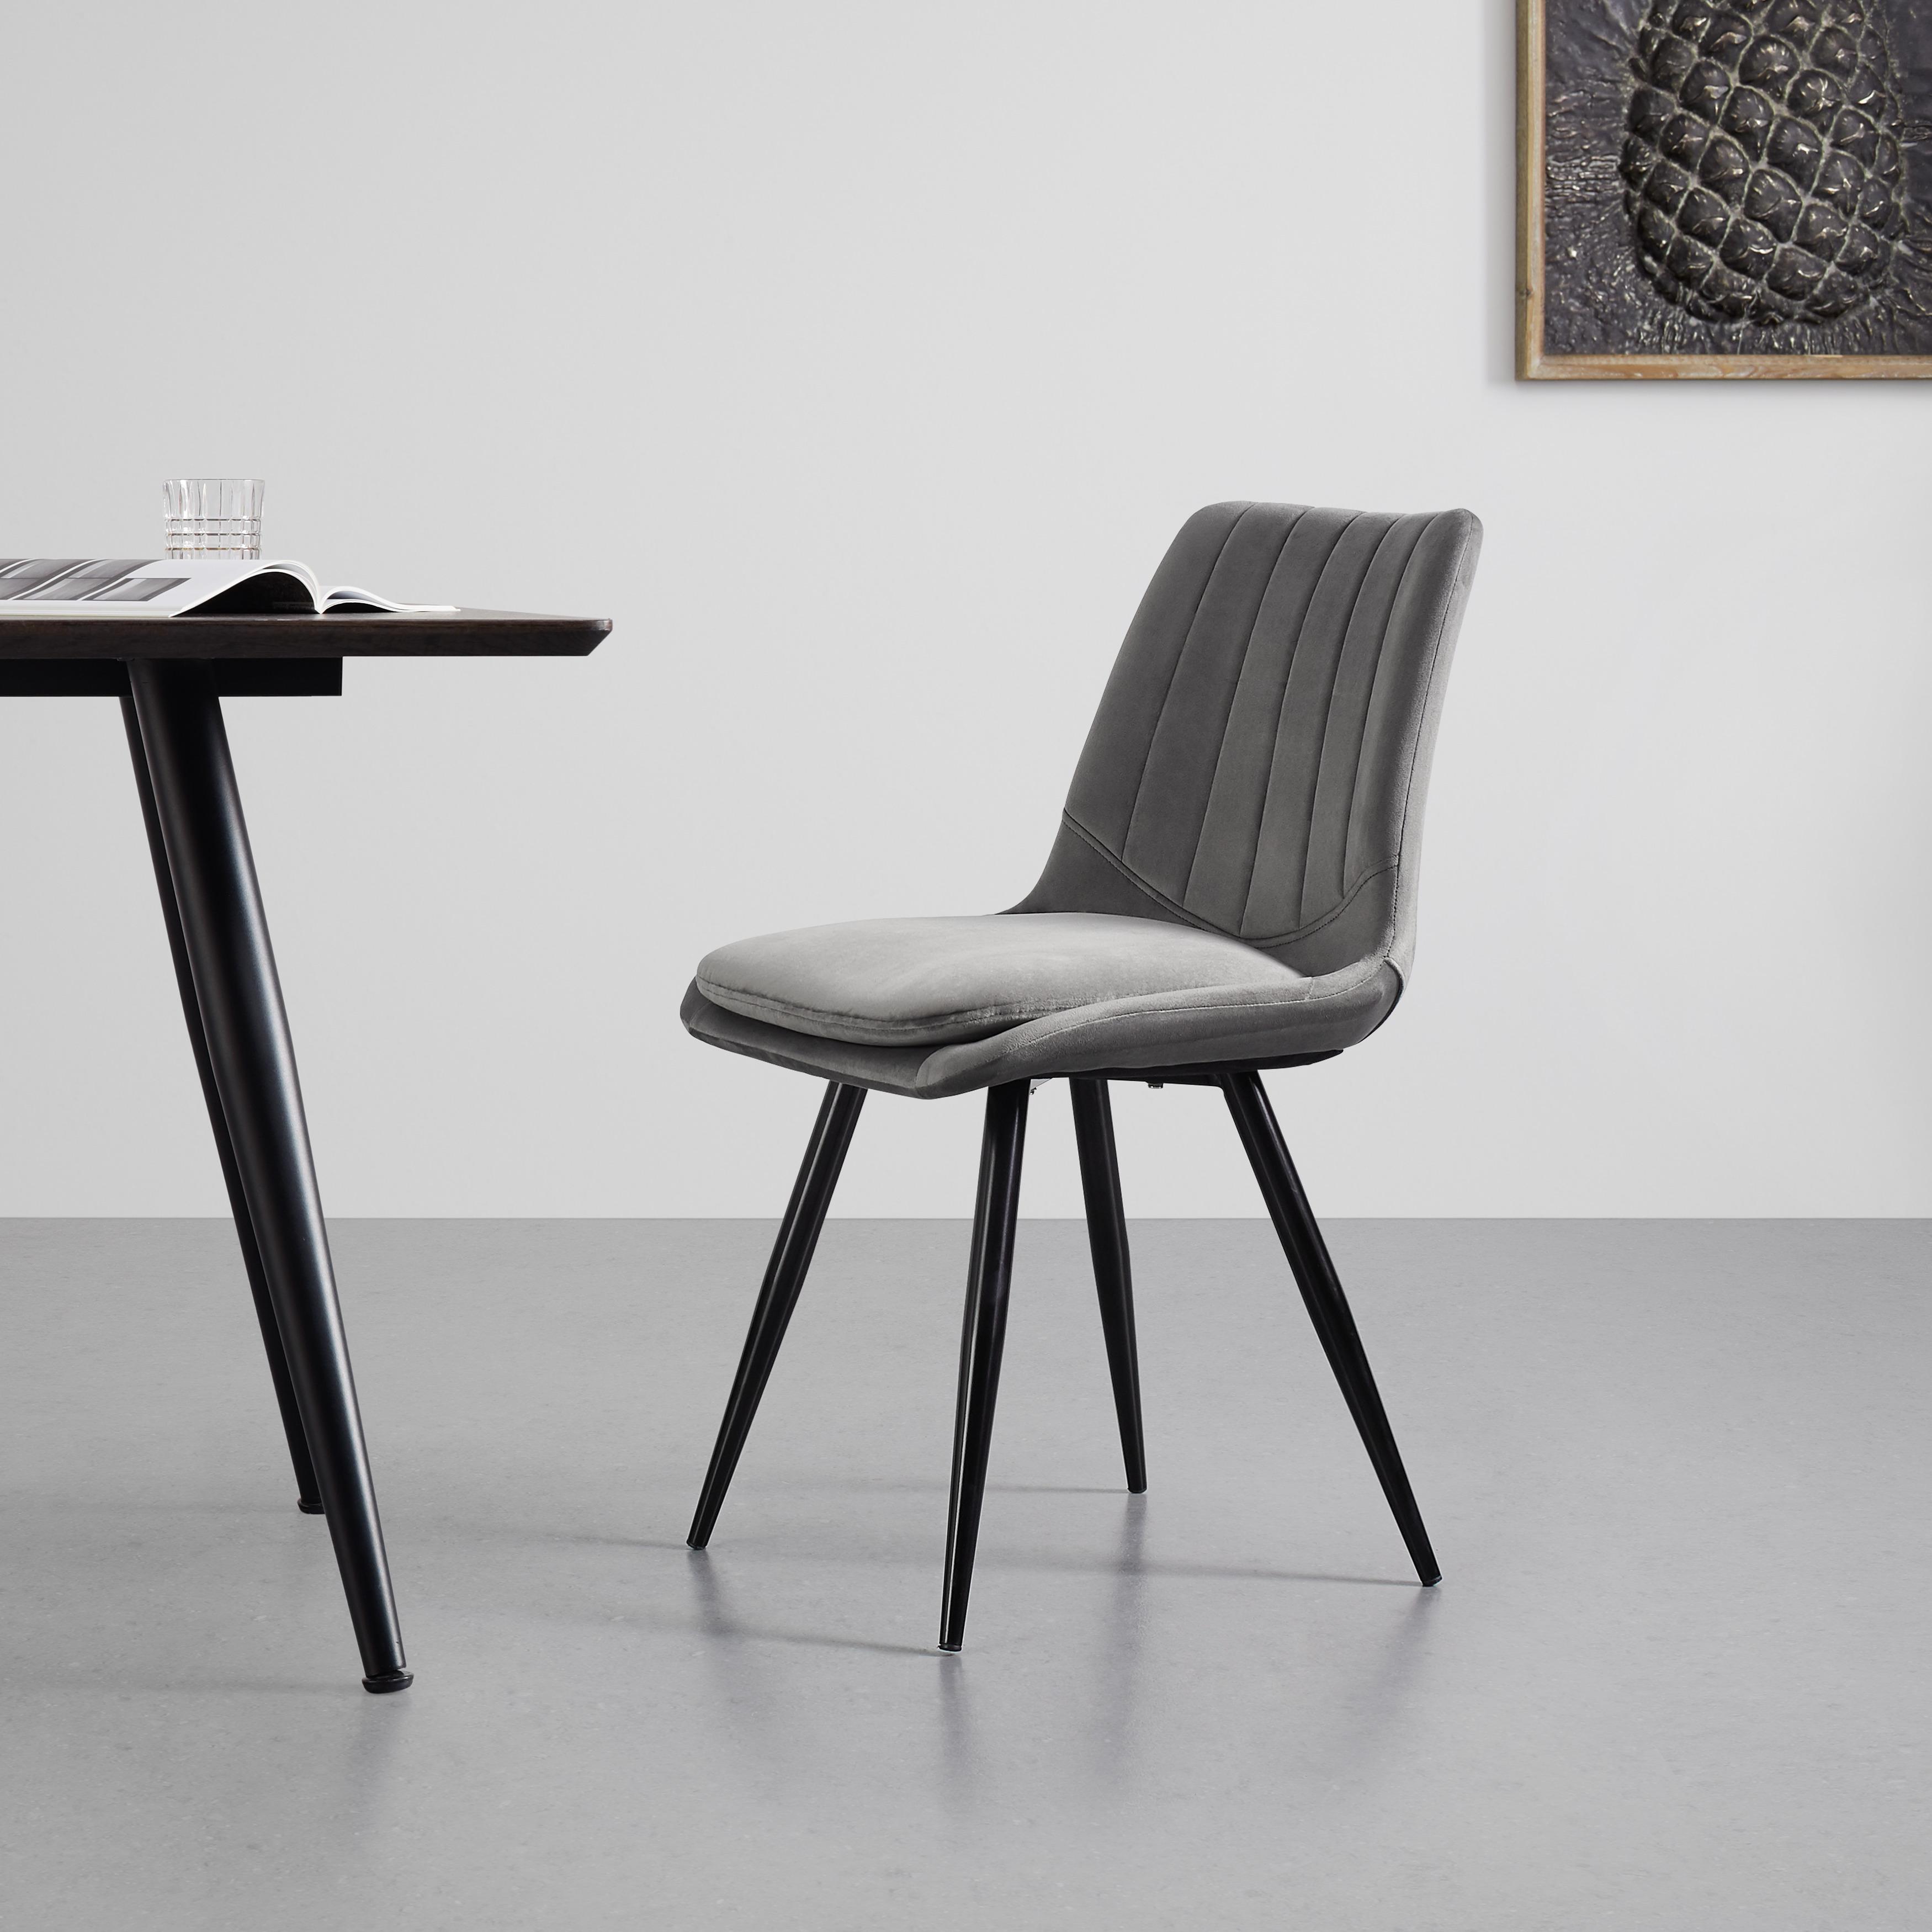 Jídelní Židle Joy Tm. Šědá - černá/tmavě šedá, Moderní, kov/textil (49/82/55cm) - Modern Living